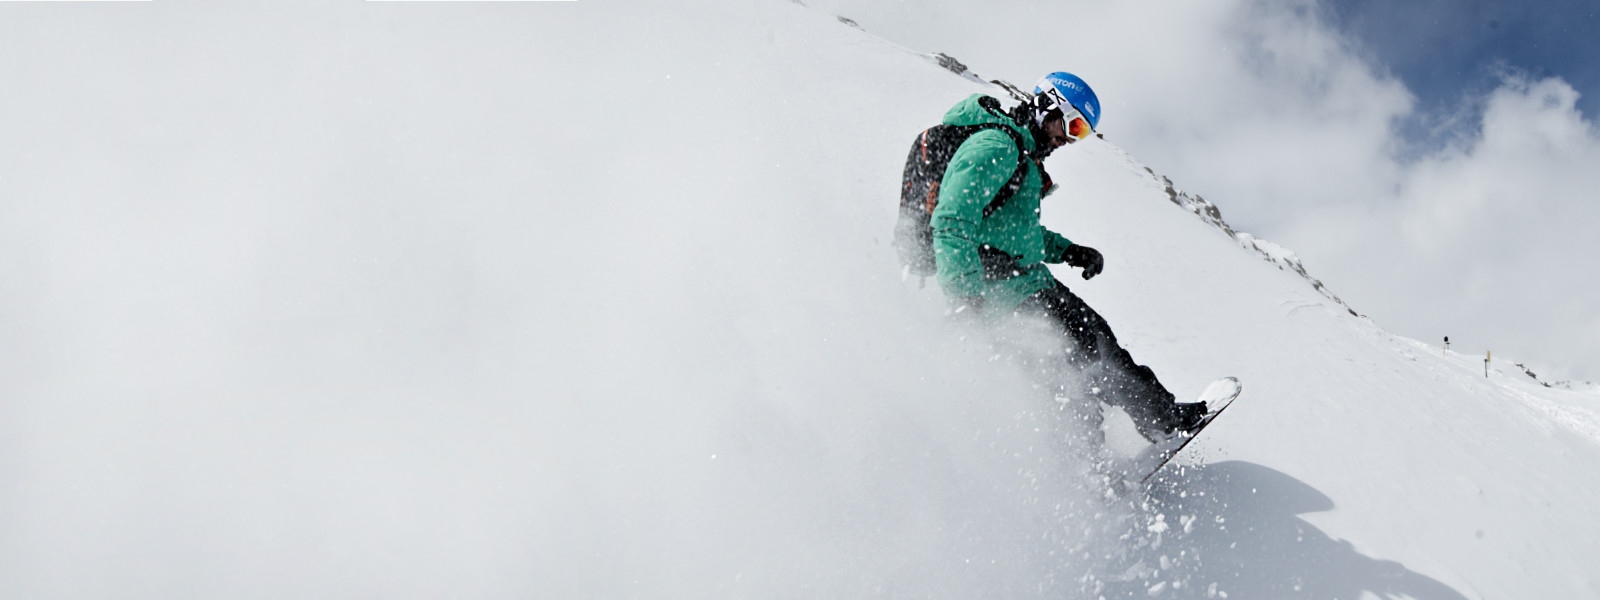 Snowboarders met een groene jas wervelt sneeuw waarop de hele linkerkant van de foto wit verven tijdens het remmen